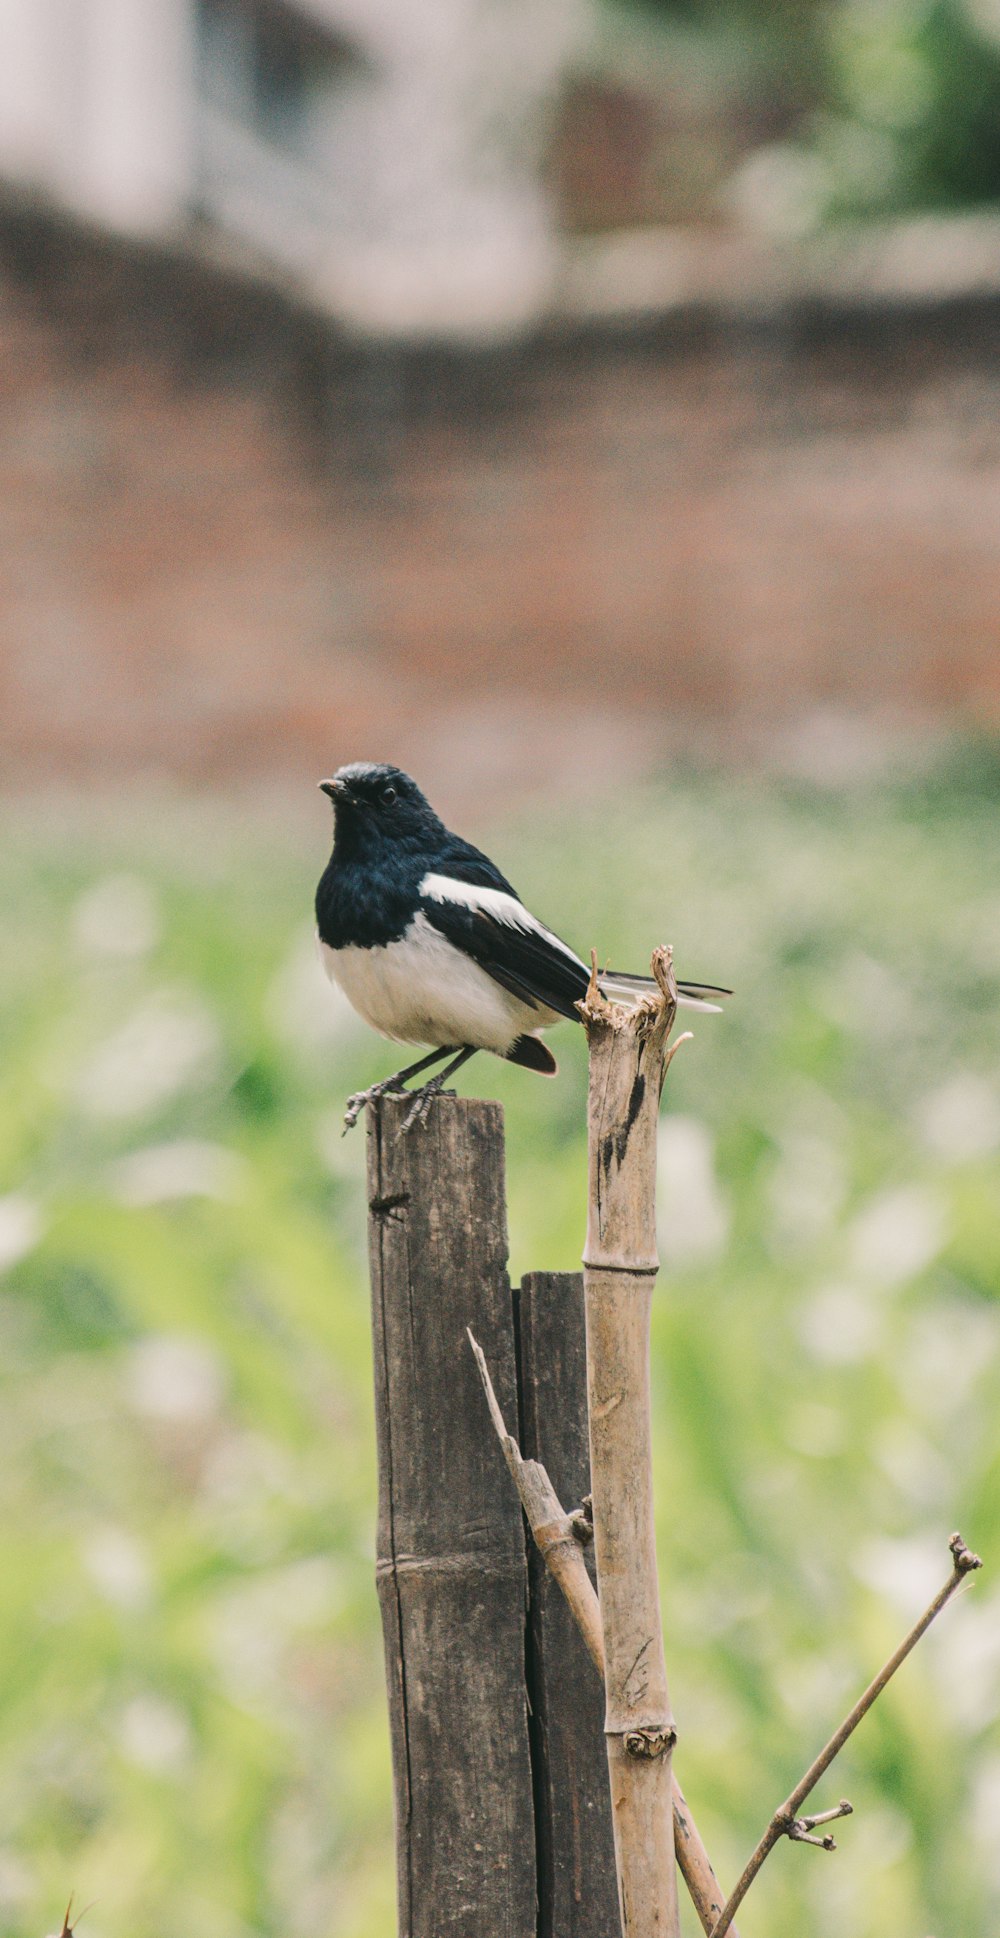 pájaro blanco y negro en palo de madera marrón durante el día